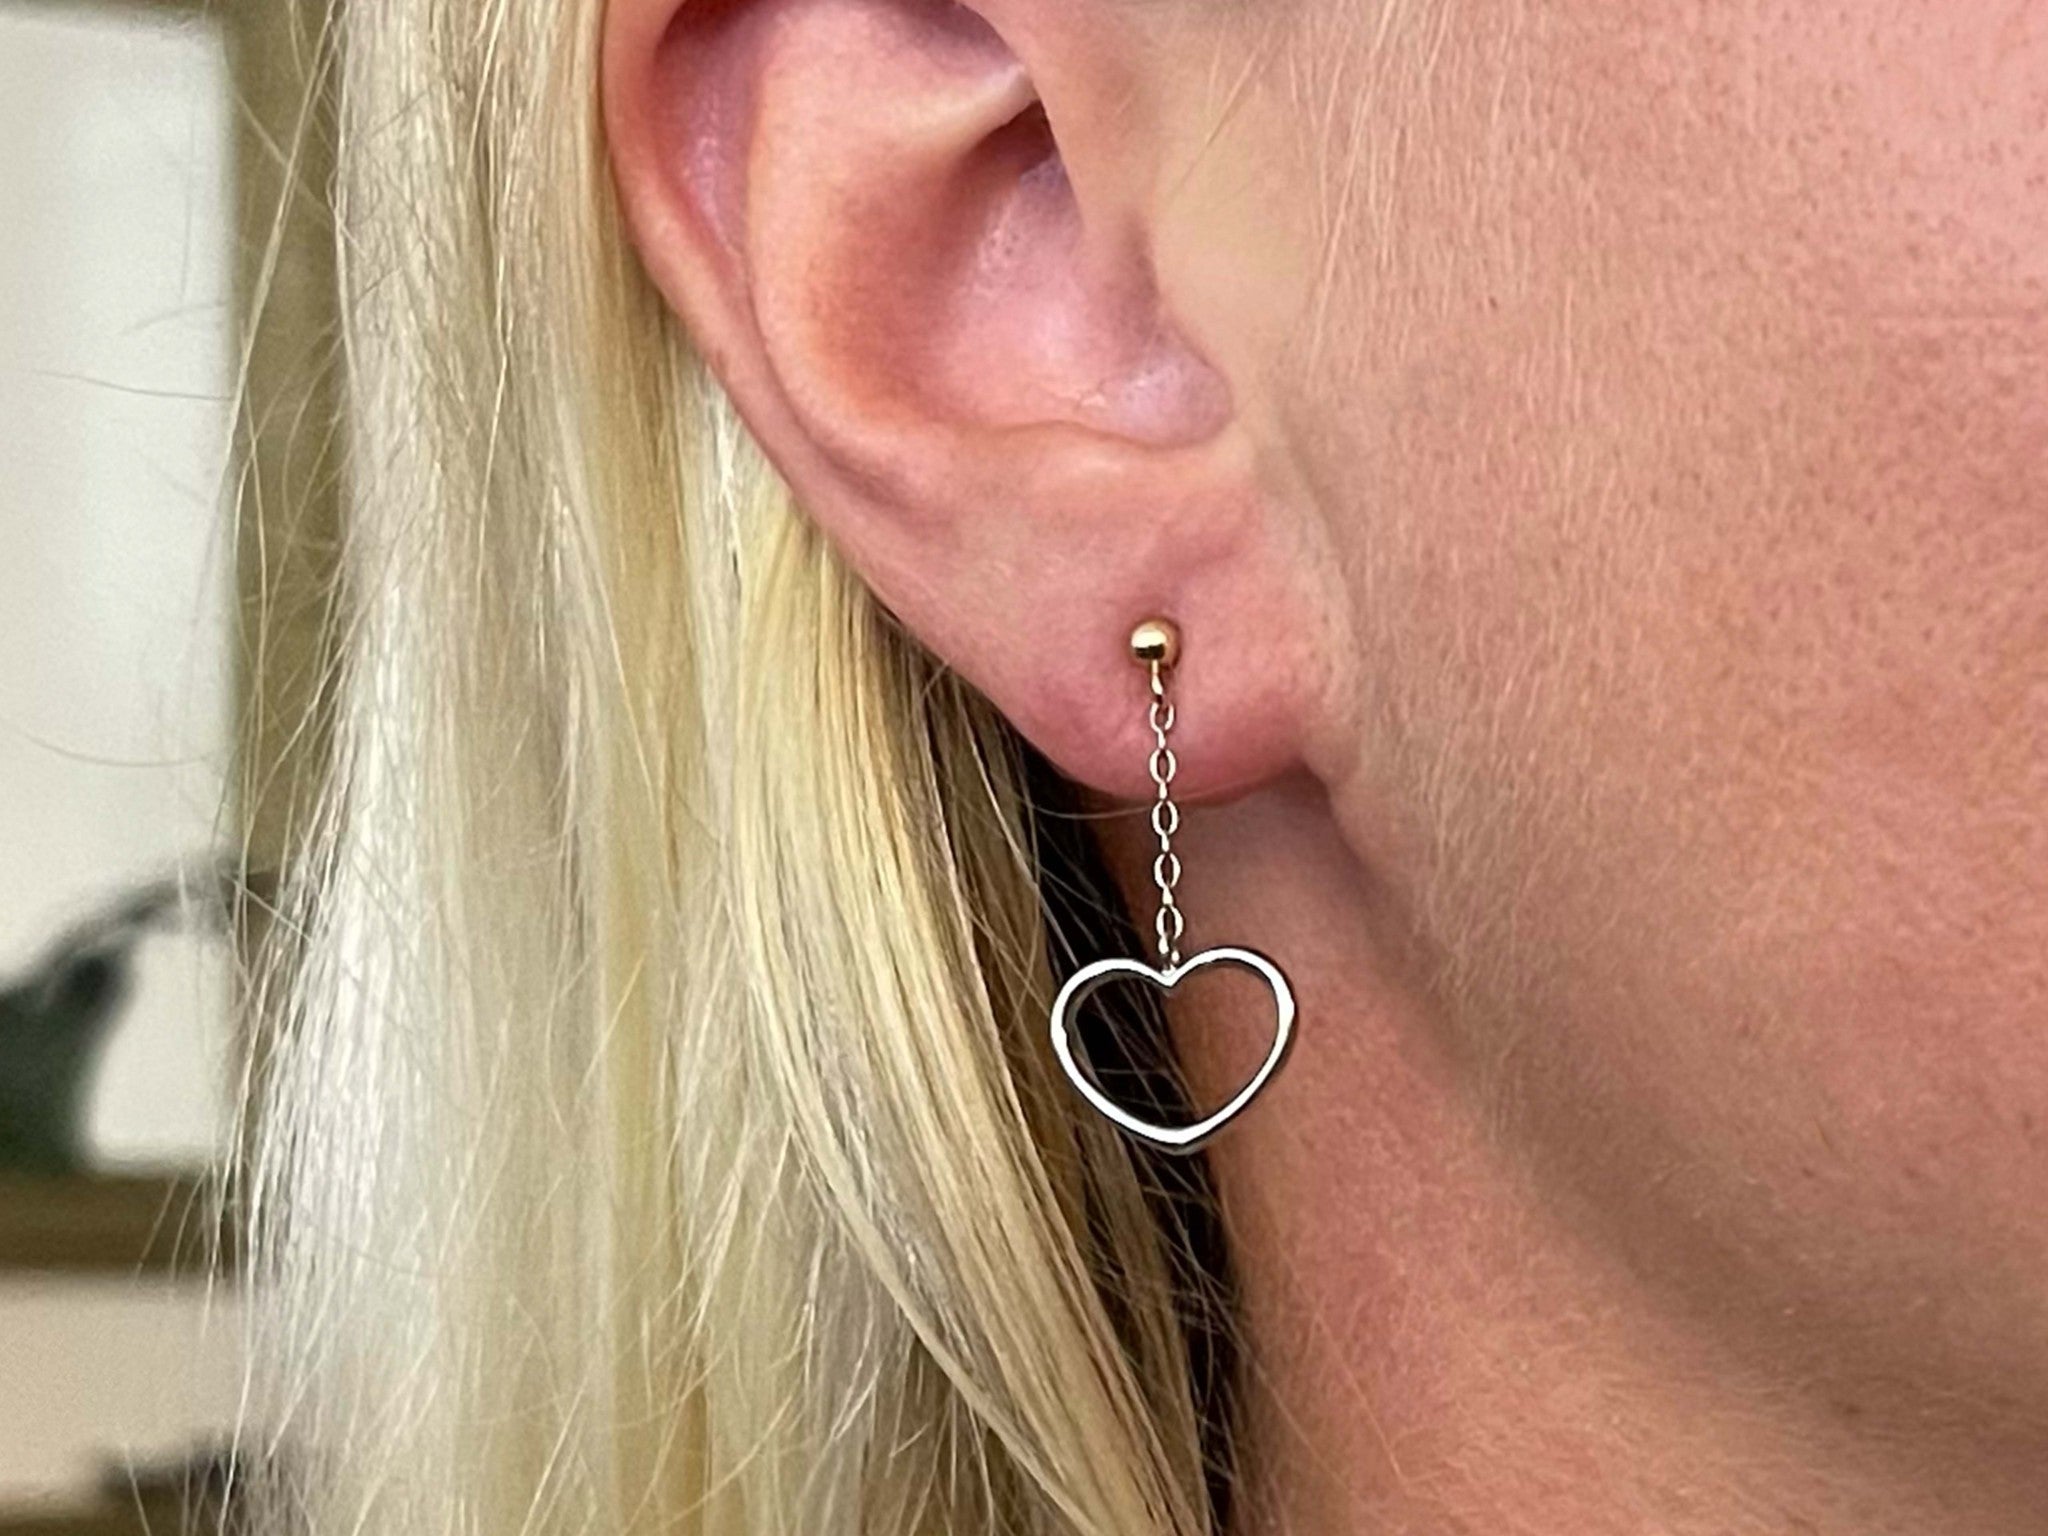 Two Toned Gold Dangly Heart Earrings